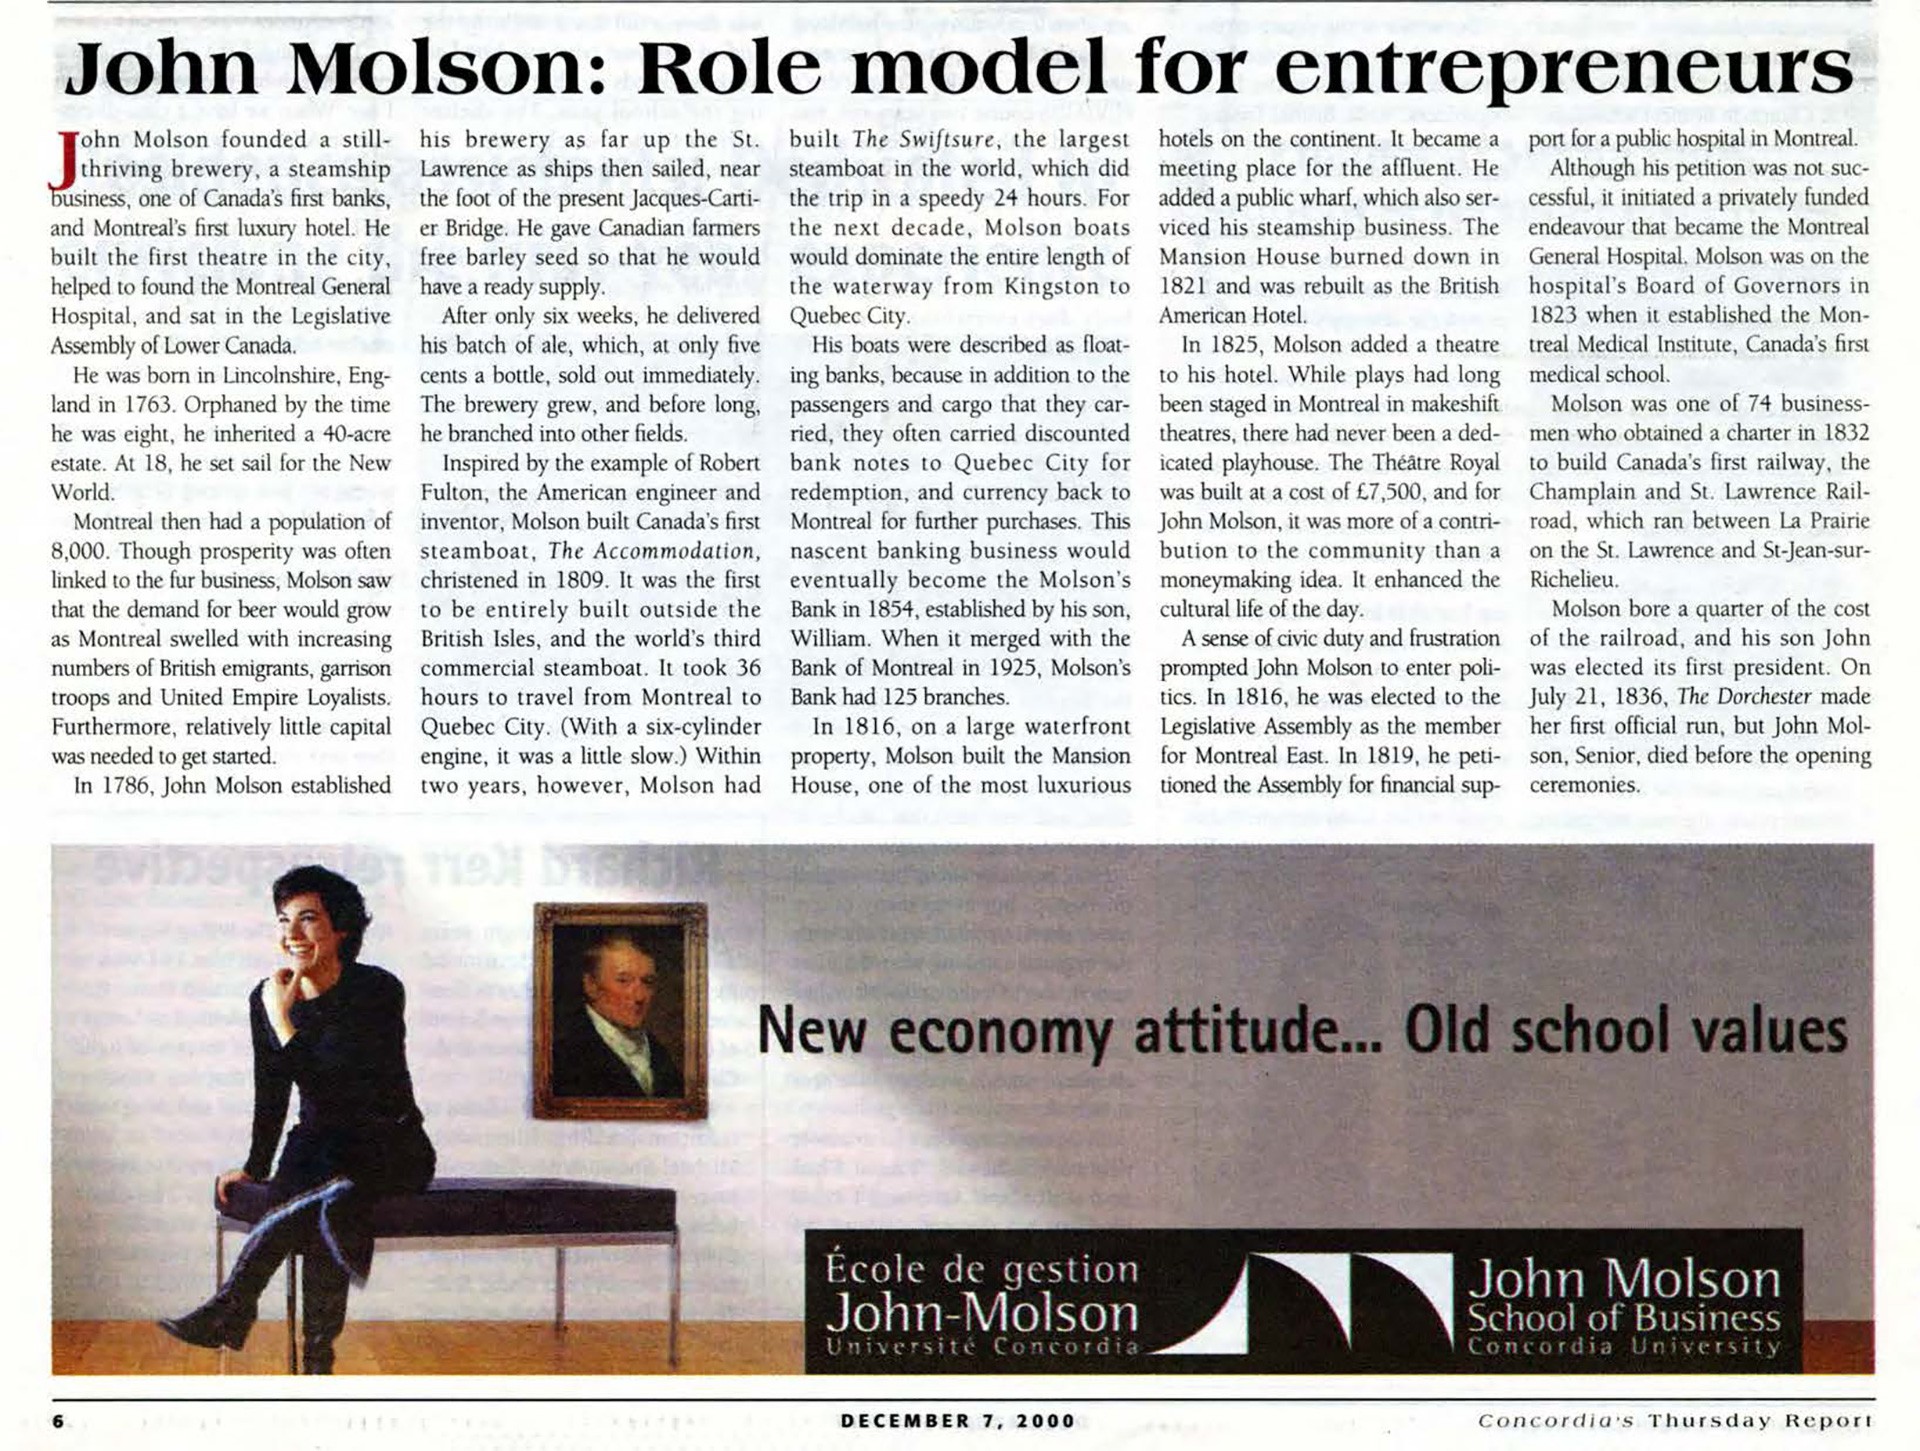 John Molson: Role model for entrepreneurs, Concordia's Thursday Report, December 7, 2000